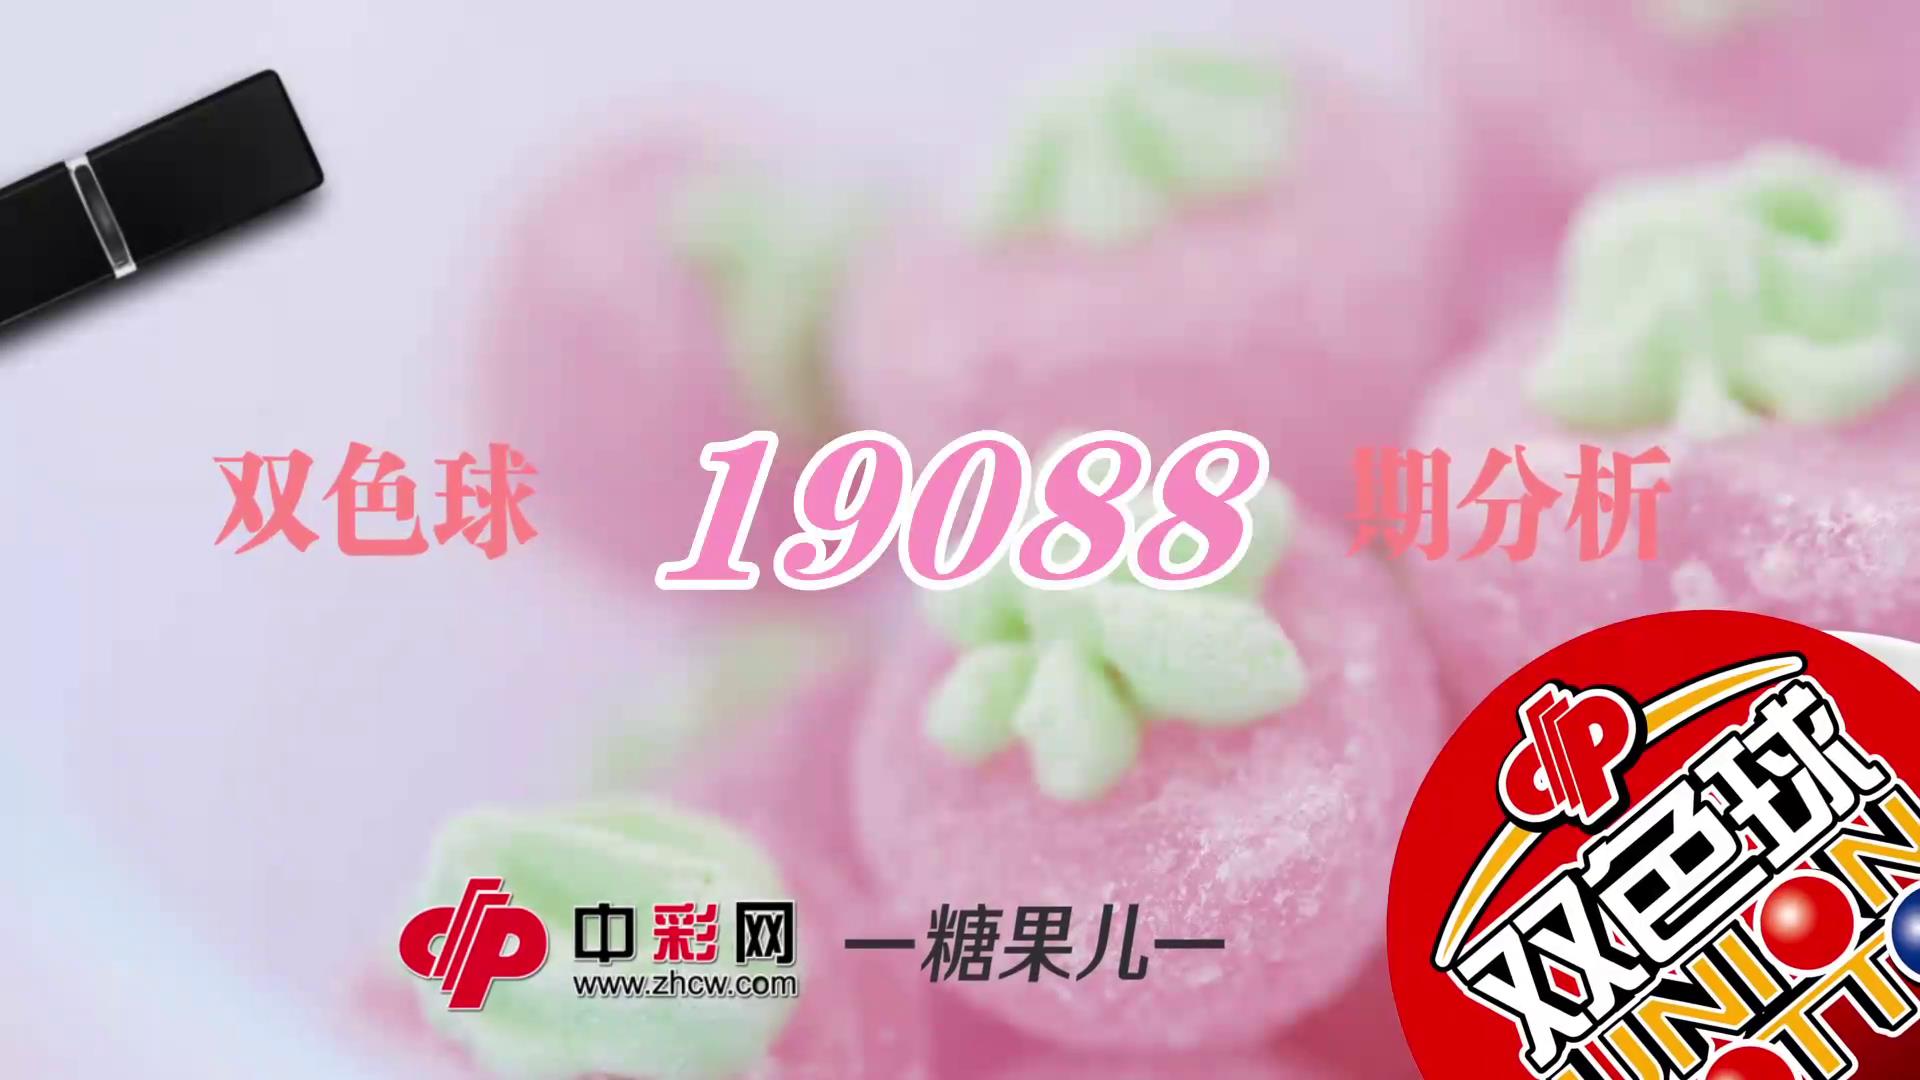 【中彩视频】糖果儿双色球第19088期